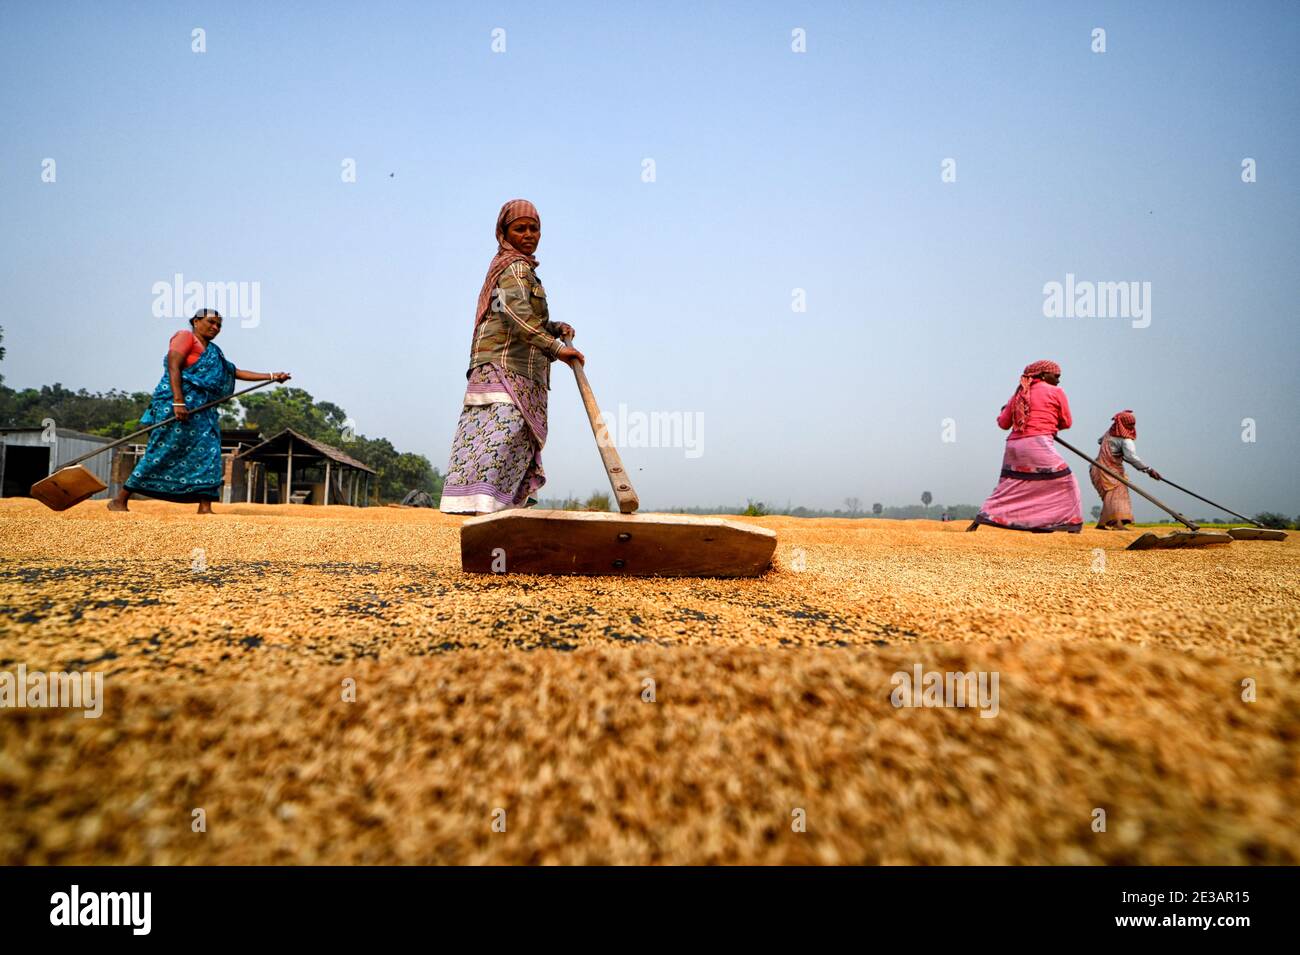 Arbeiterinnen sahen, wie sie das Reiskorn mit ihren Rechen ausbreiteten.das Trocknen von Reiskörnern ist einer der wichtigsten Schritte, bevor sie in die Reismühle gebracht werden.durch die Verringerung des Feuchtigkeitsgehalts des Getreides wird das Risiko von Bakterien auf ein Minimum für die Lagerung begrenzt. Stockfoto